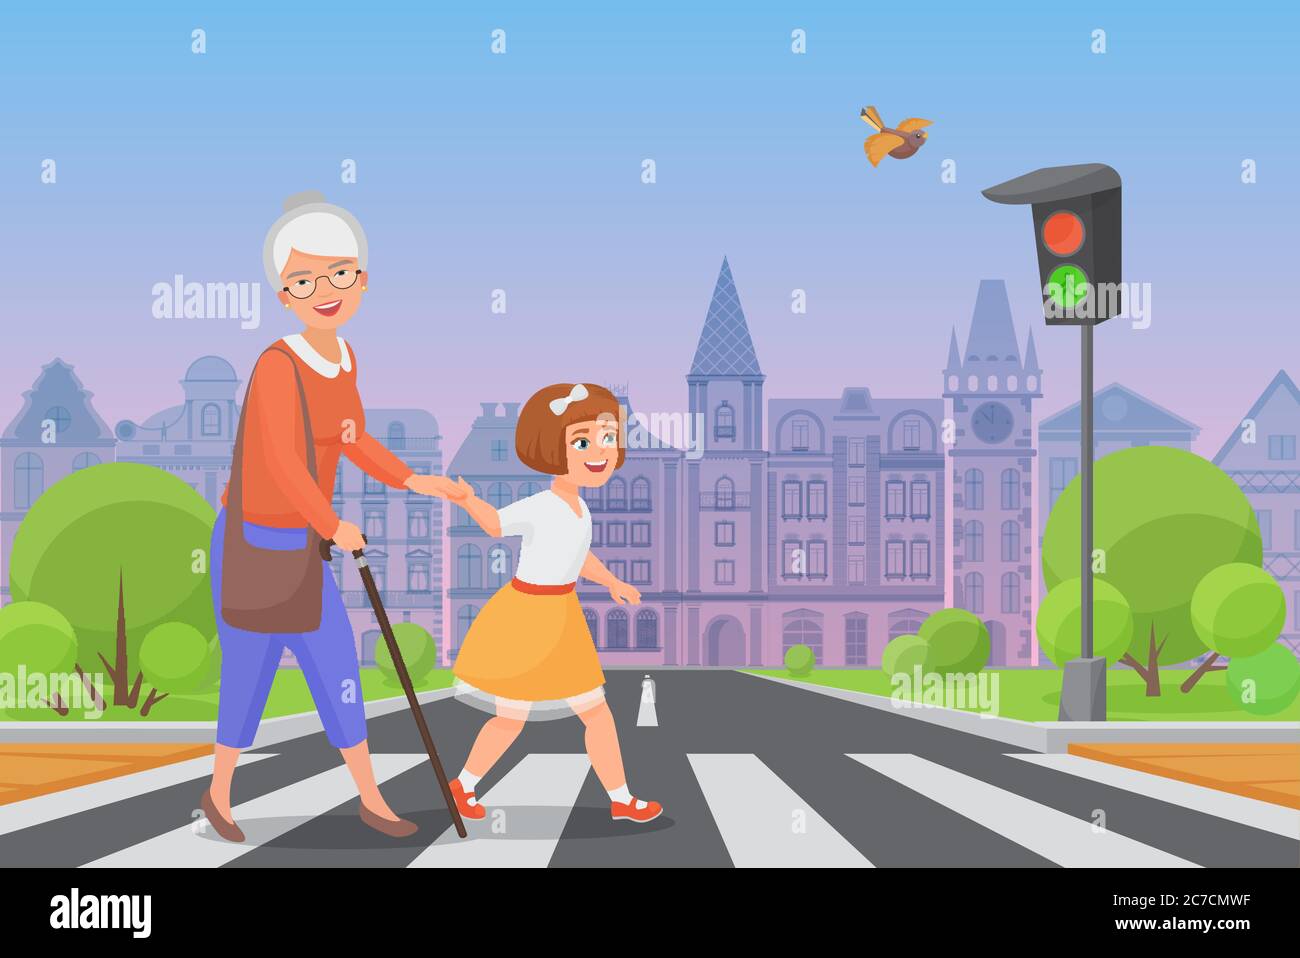 Une petite fille polie aide une vieille femme souriante à passer la route à un passage pour piétons tandis que le feu vert brille. Illustration à vecteur de couleur Illustration de Vecteur